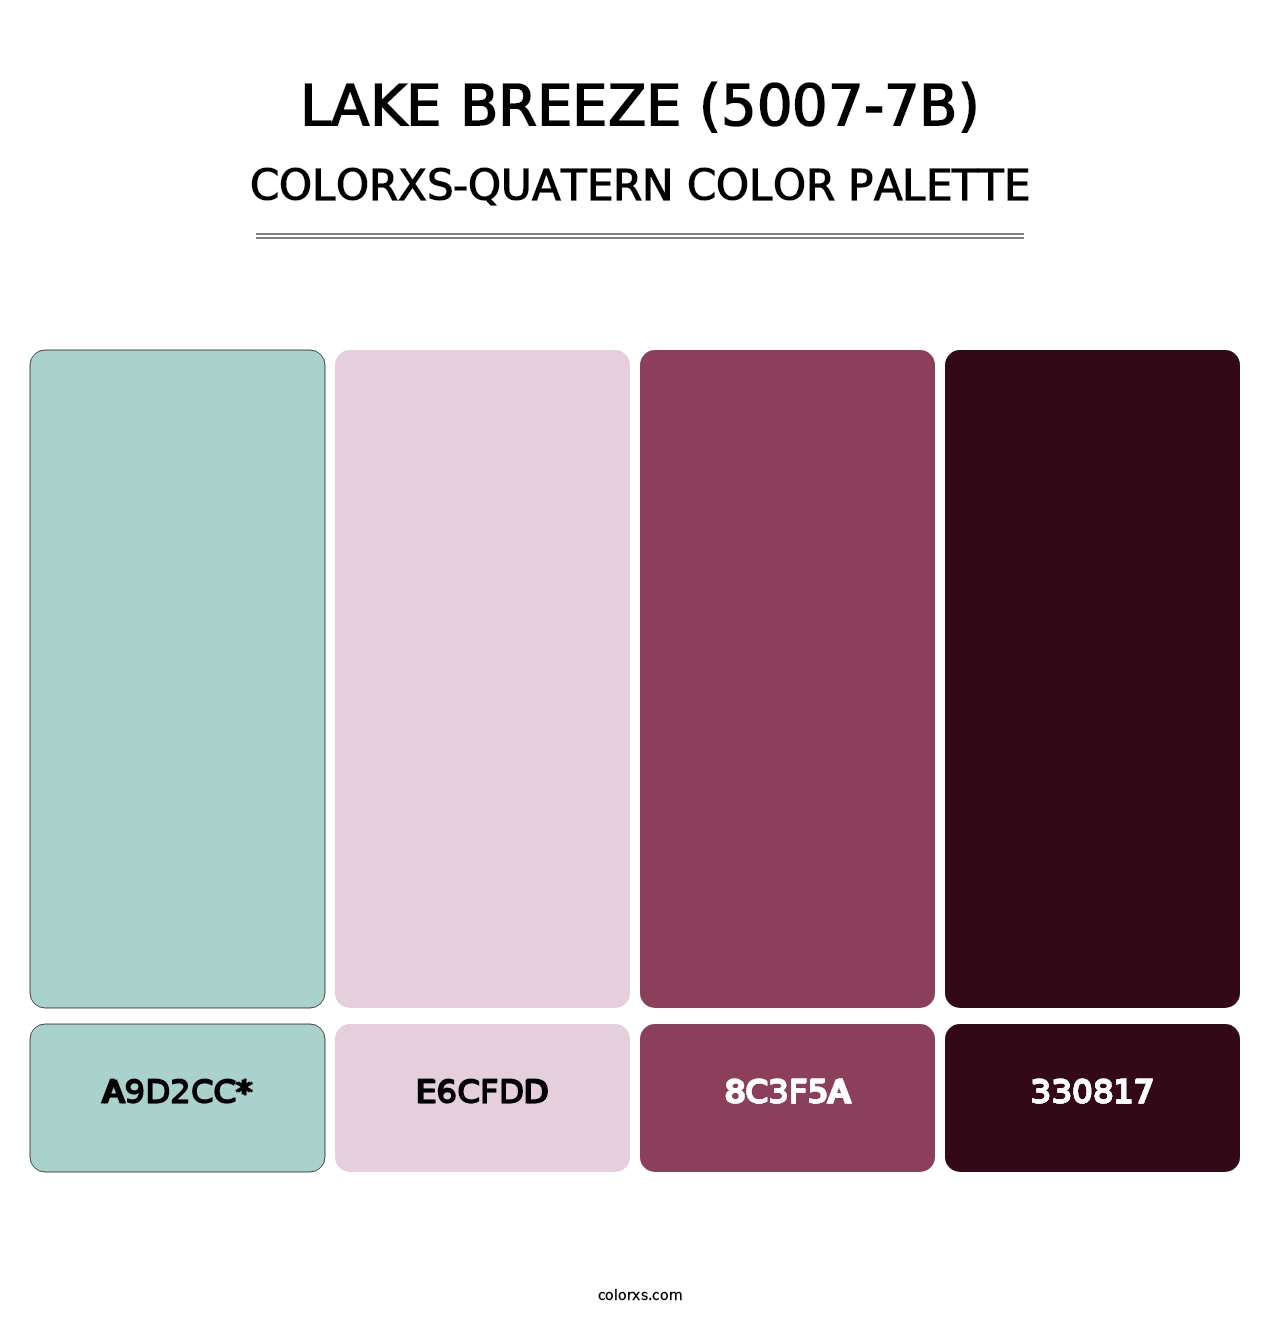 Lake Breeze (5007-7B) - Colorxs Quatern Palette